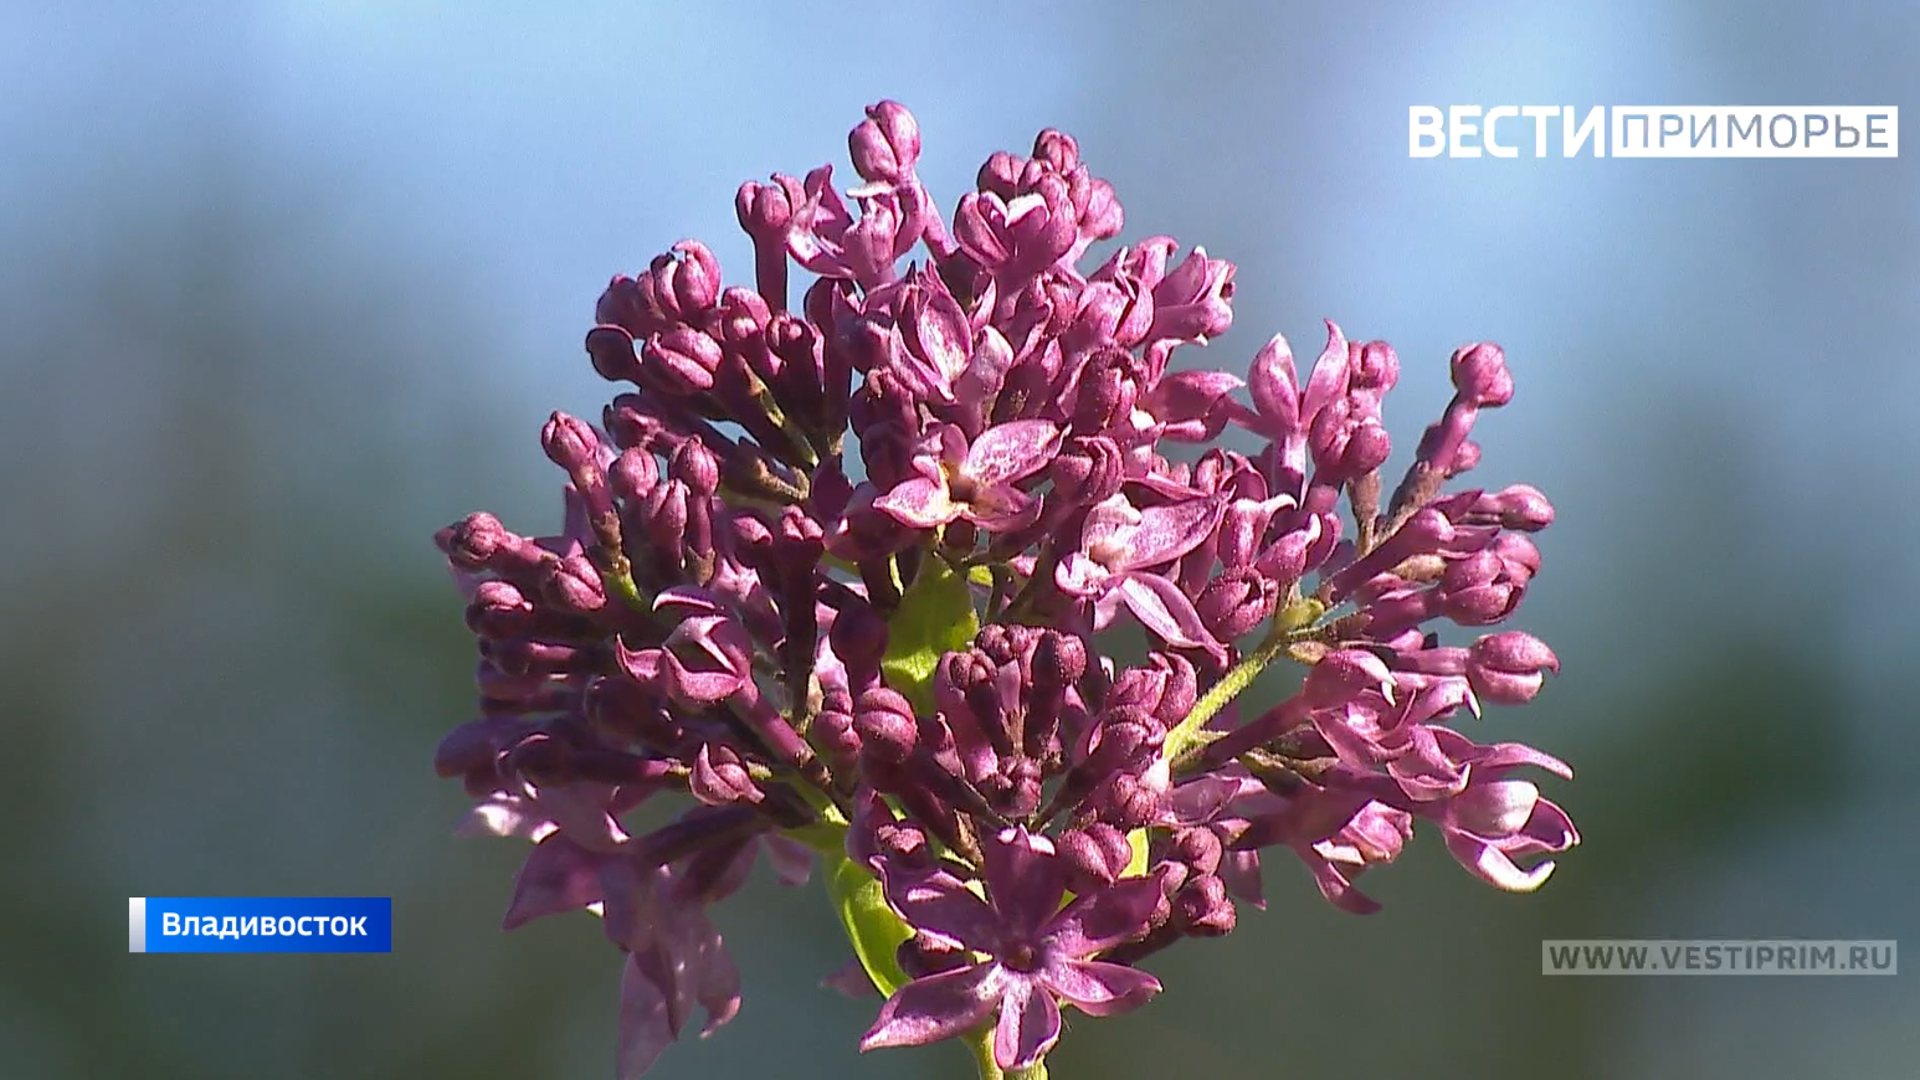 丁香和杜鹃花在符拉迪沃斯托克开花——科学家如何解释这种大自然的馈赠？